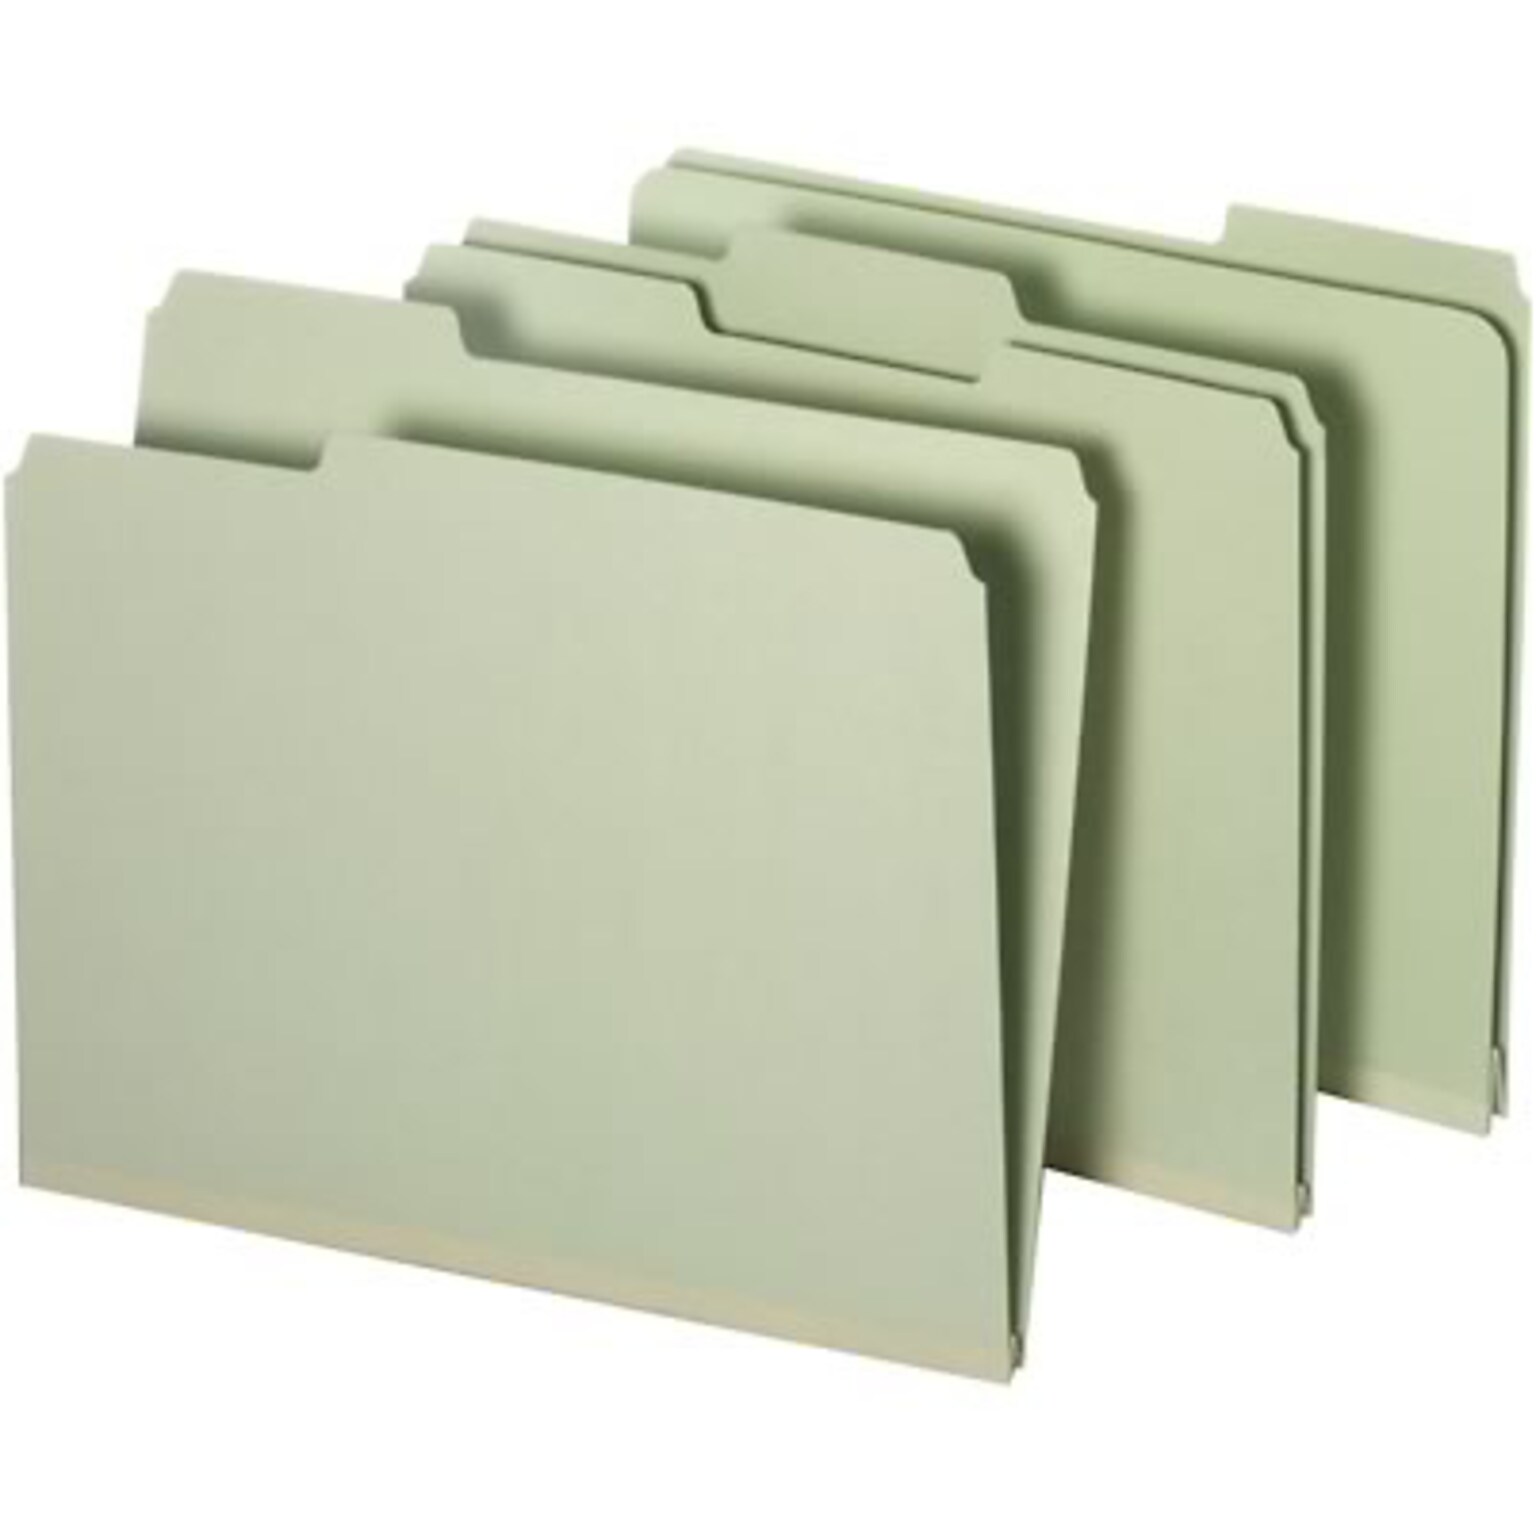 Quill Brand® Heavy-duty Pressboard File Folders, 1/3 Cut, Letter Size, Assorted Tabs, 2 Gusset, Light Green, 25/Box (713234R)